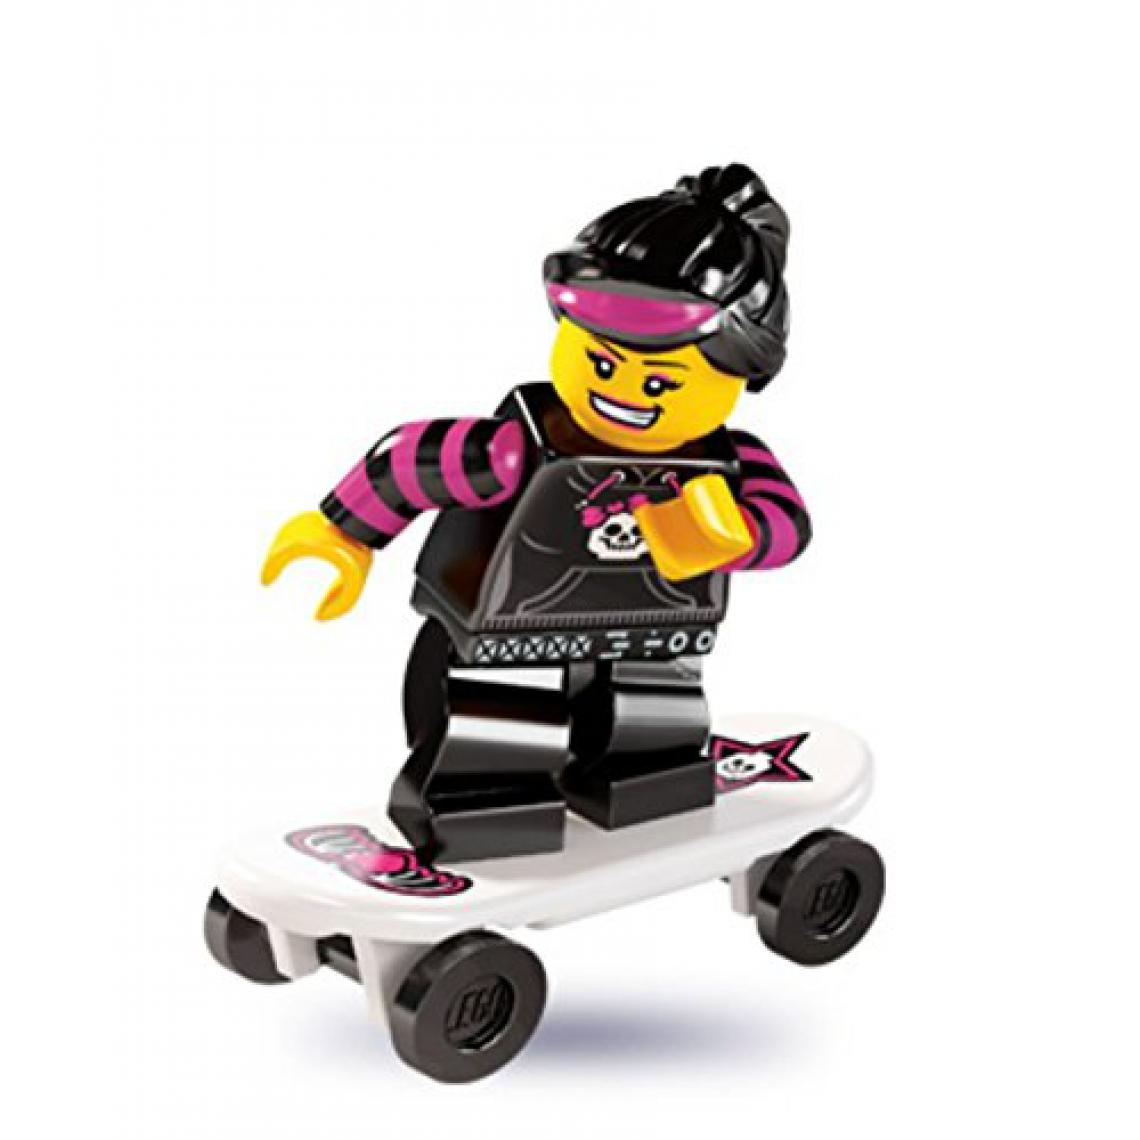 Lego - LEgO 8827 Minifigures Series 6 - Minifigure Skater girl x1 Loose - Briques et blocs